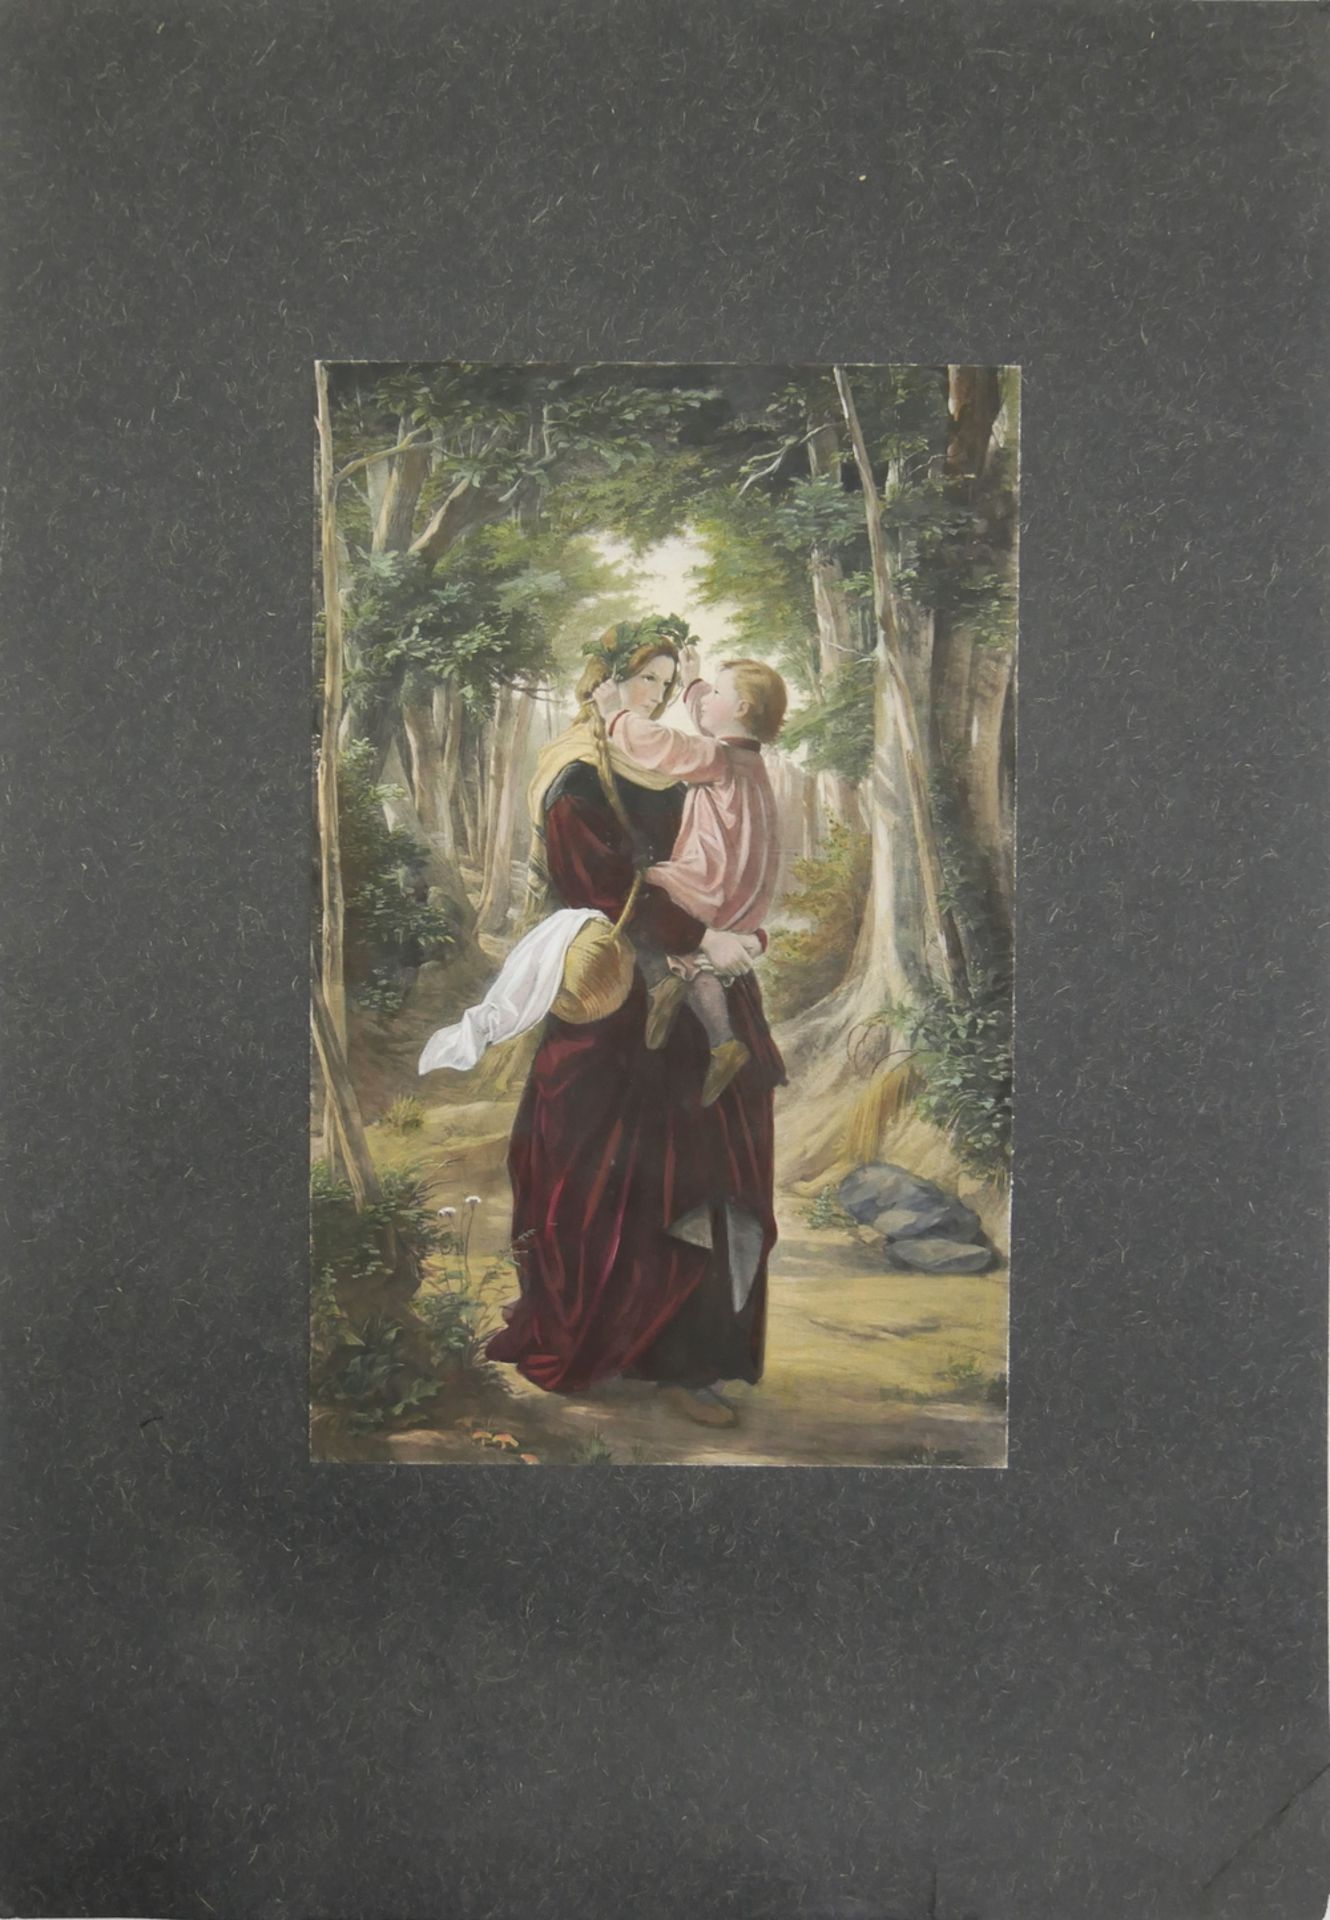 Druck nach dem Gemälde von Leopold Bode (1831-1906) "Eine Mutter mit ihrem Kind". Gesamtmaße: Höhe